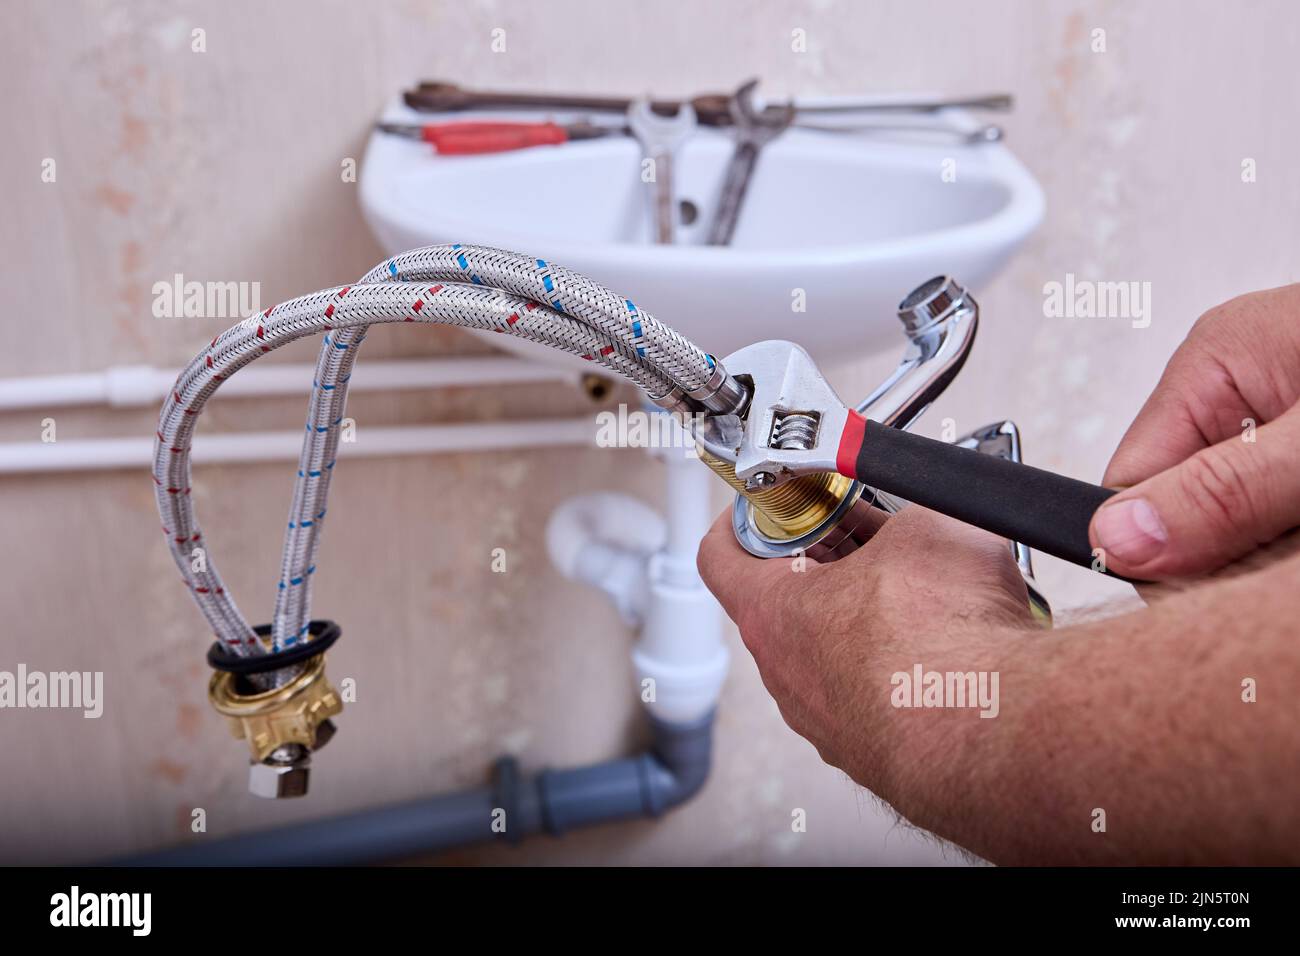 Trabajos de fontanería En el cuarto del baño, un fontanero instala un nuevo grifo de agua en el sistema de tuberías de la casa. Foto de stock